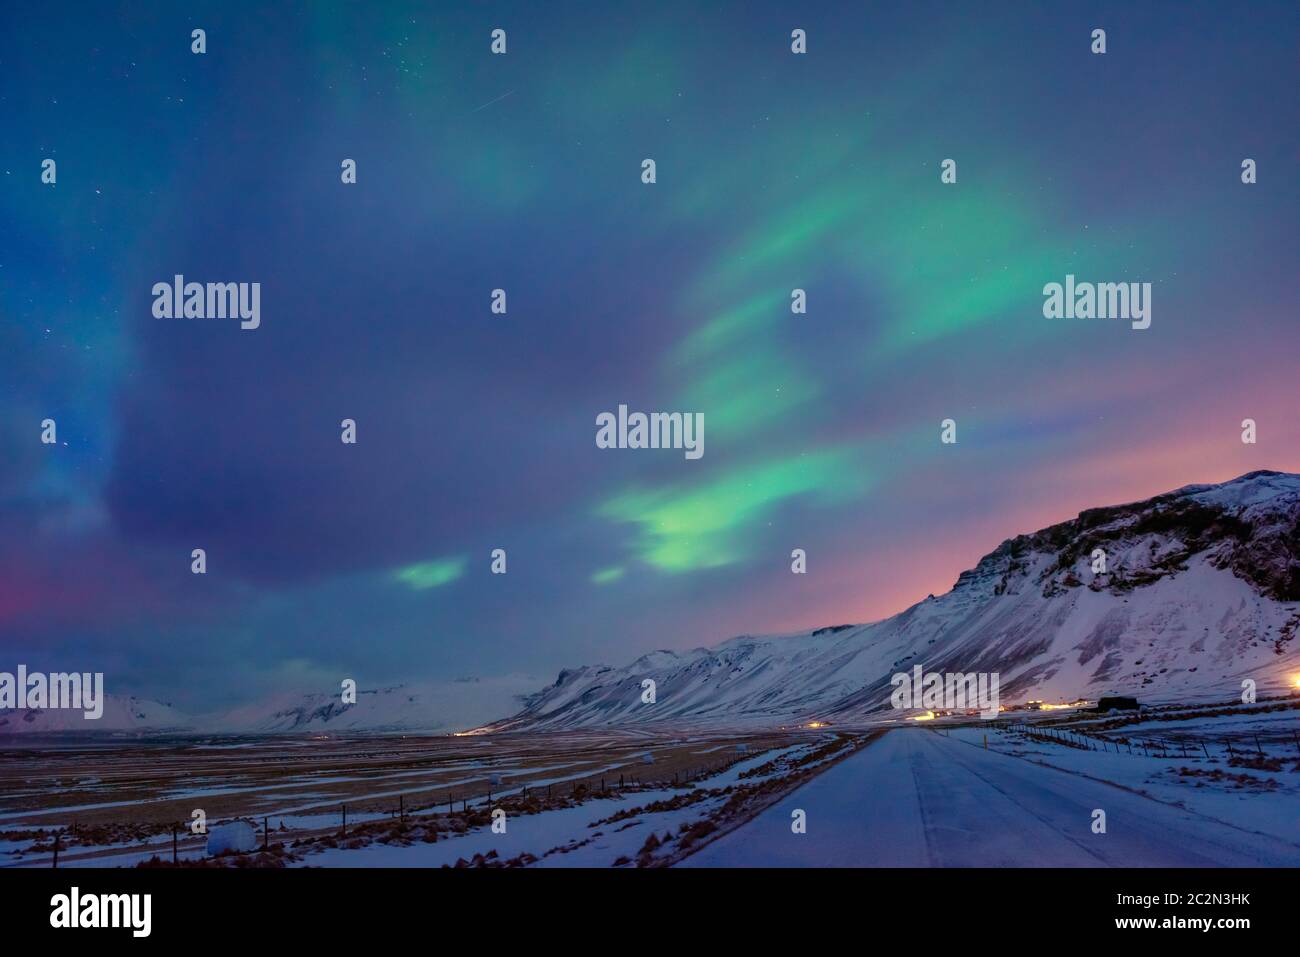 Des lumières du Nord étonnantes, une vue magnifique sur un ciel coloré au-dessus des hautes montagnes couvertes de neige, une merveilleuse nature de l'Islande Banque D'Images